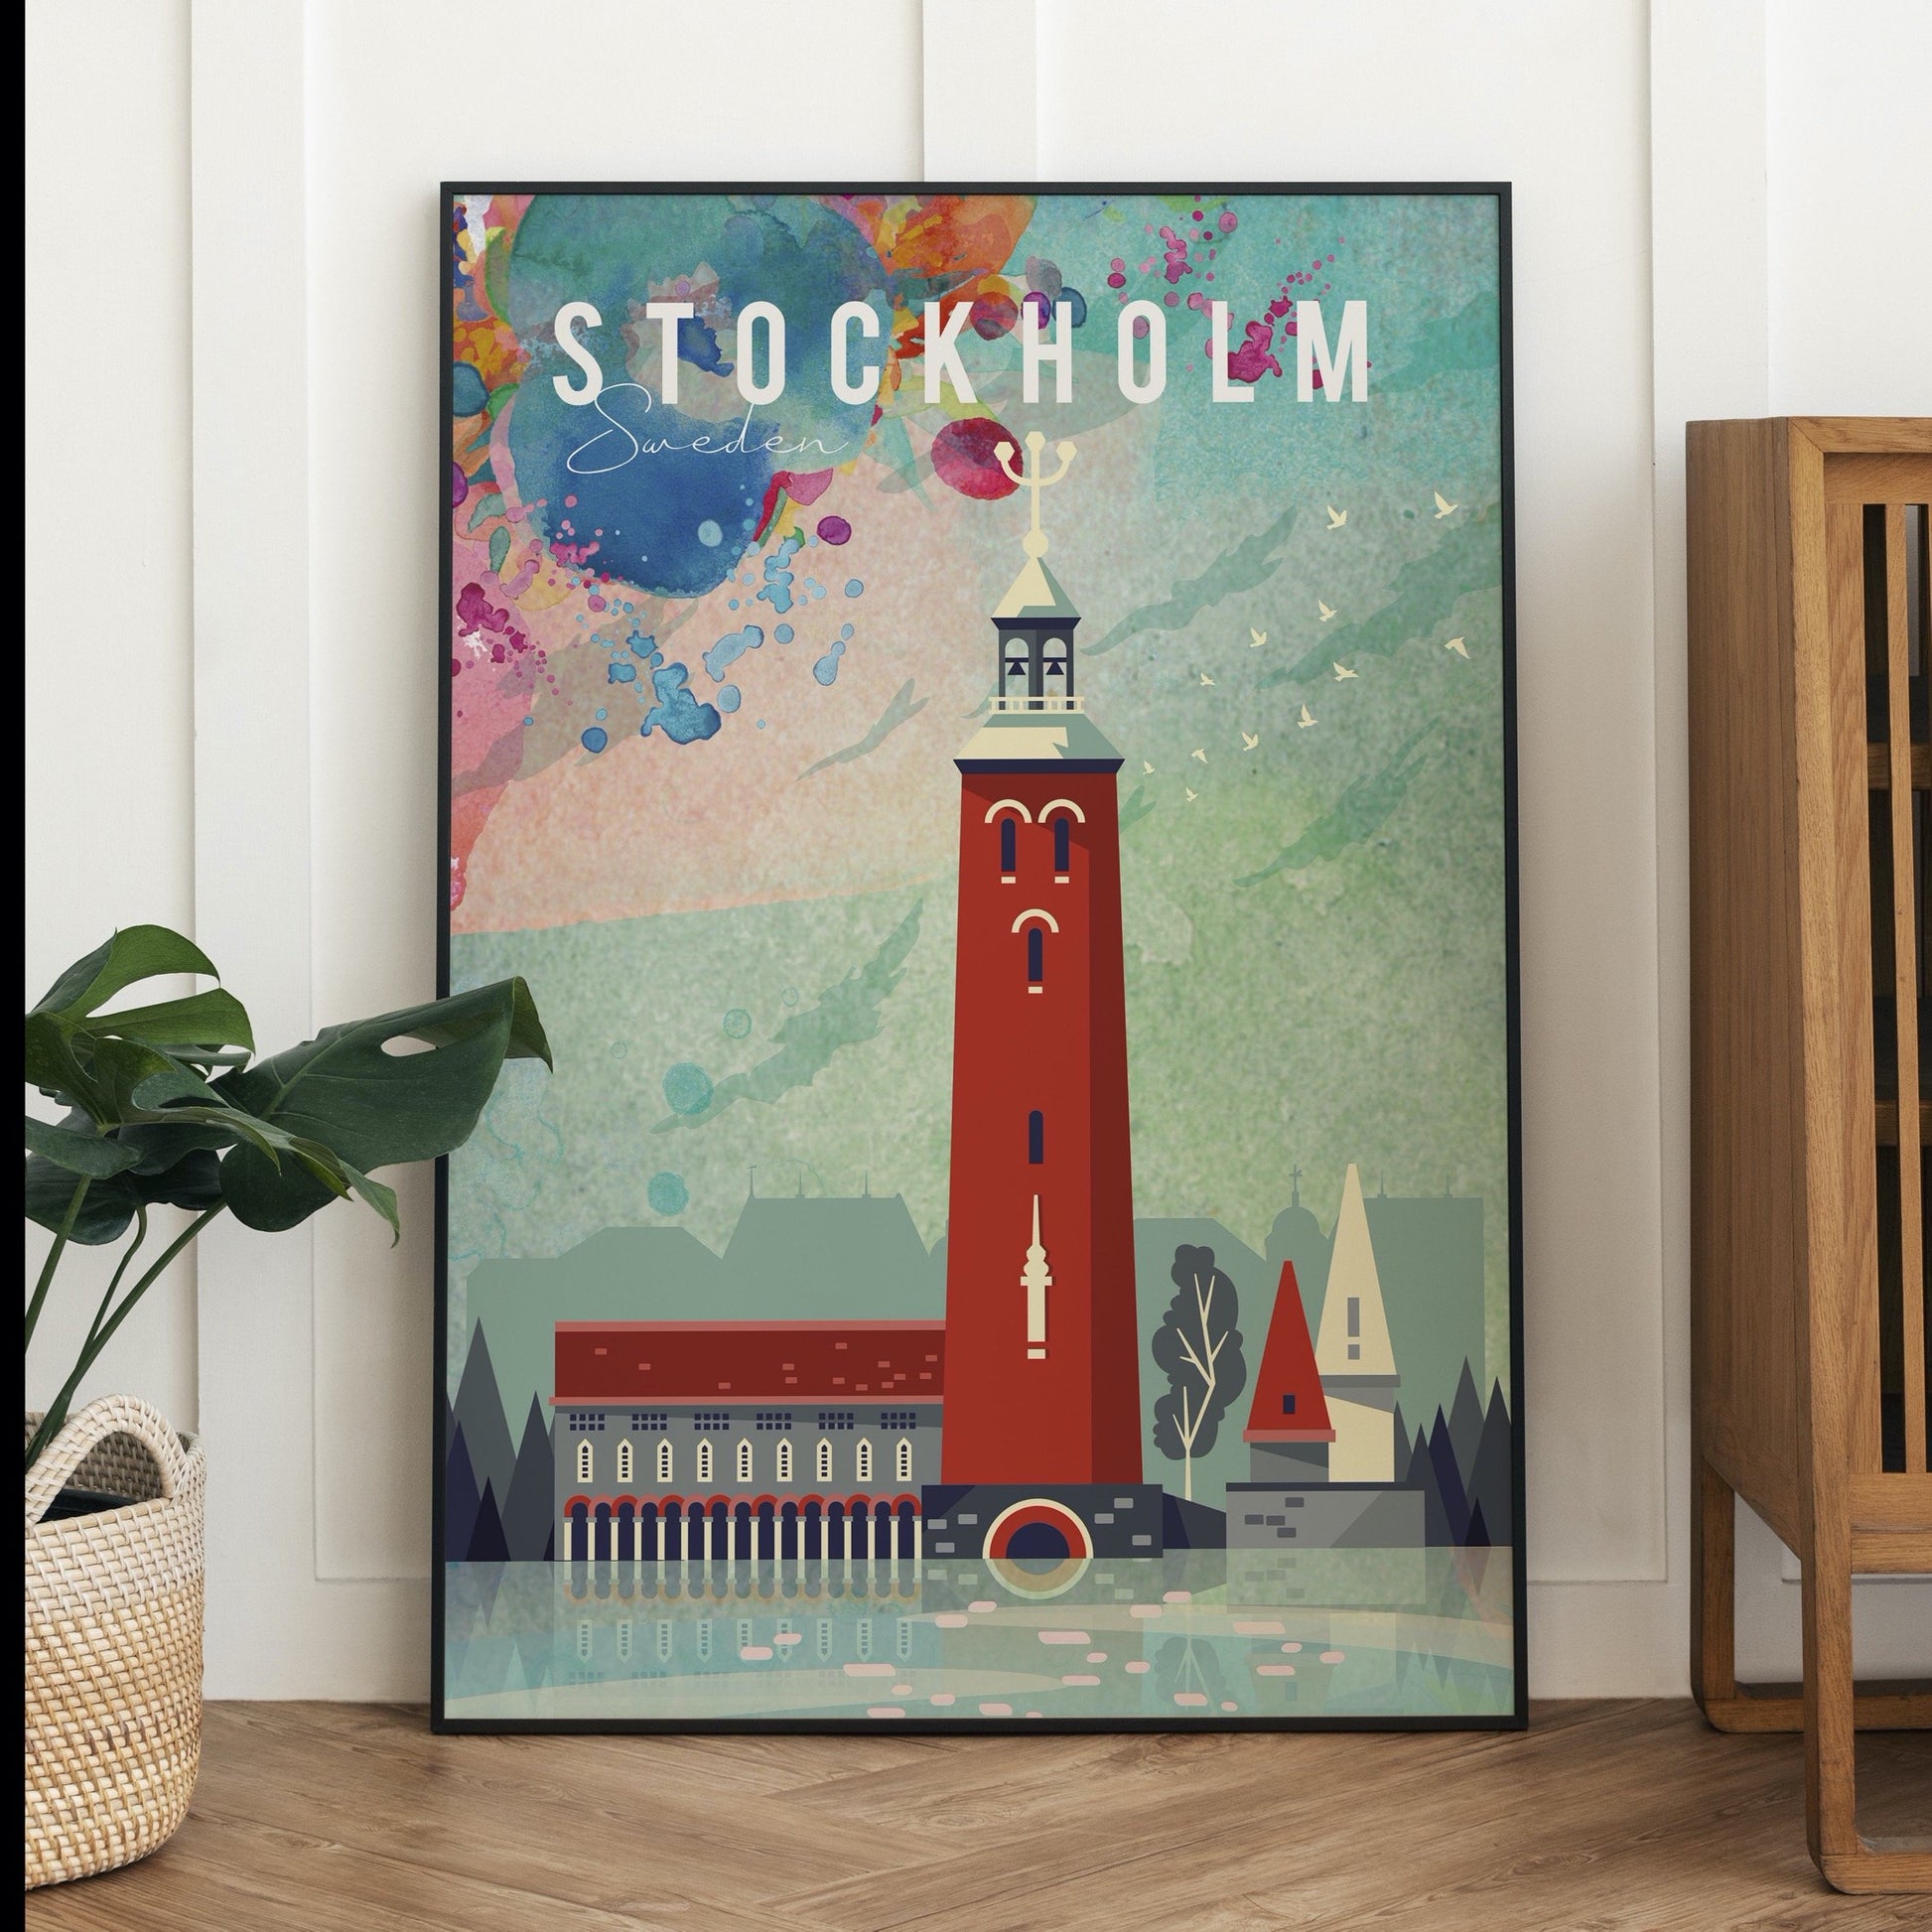 Stockholm, Sweden fine art travel print